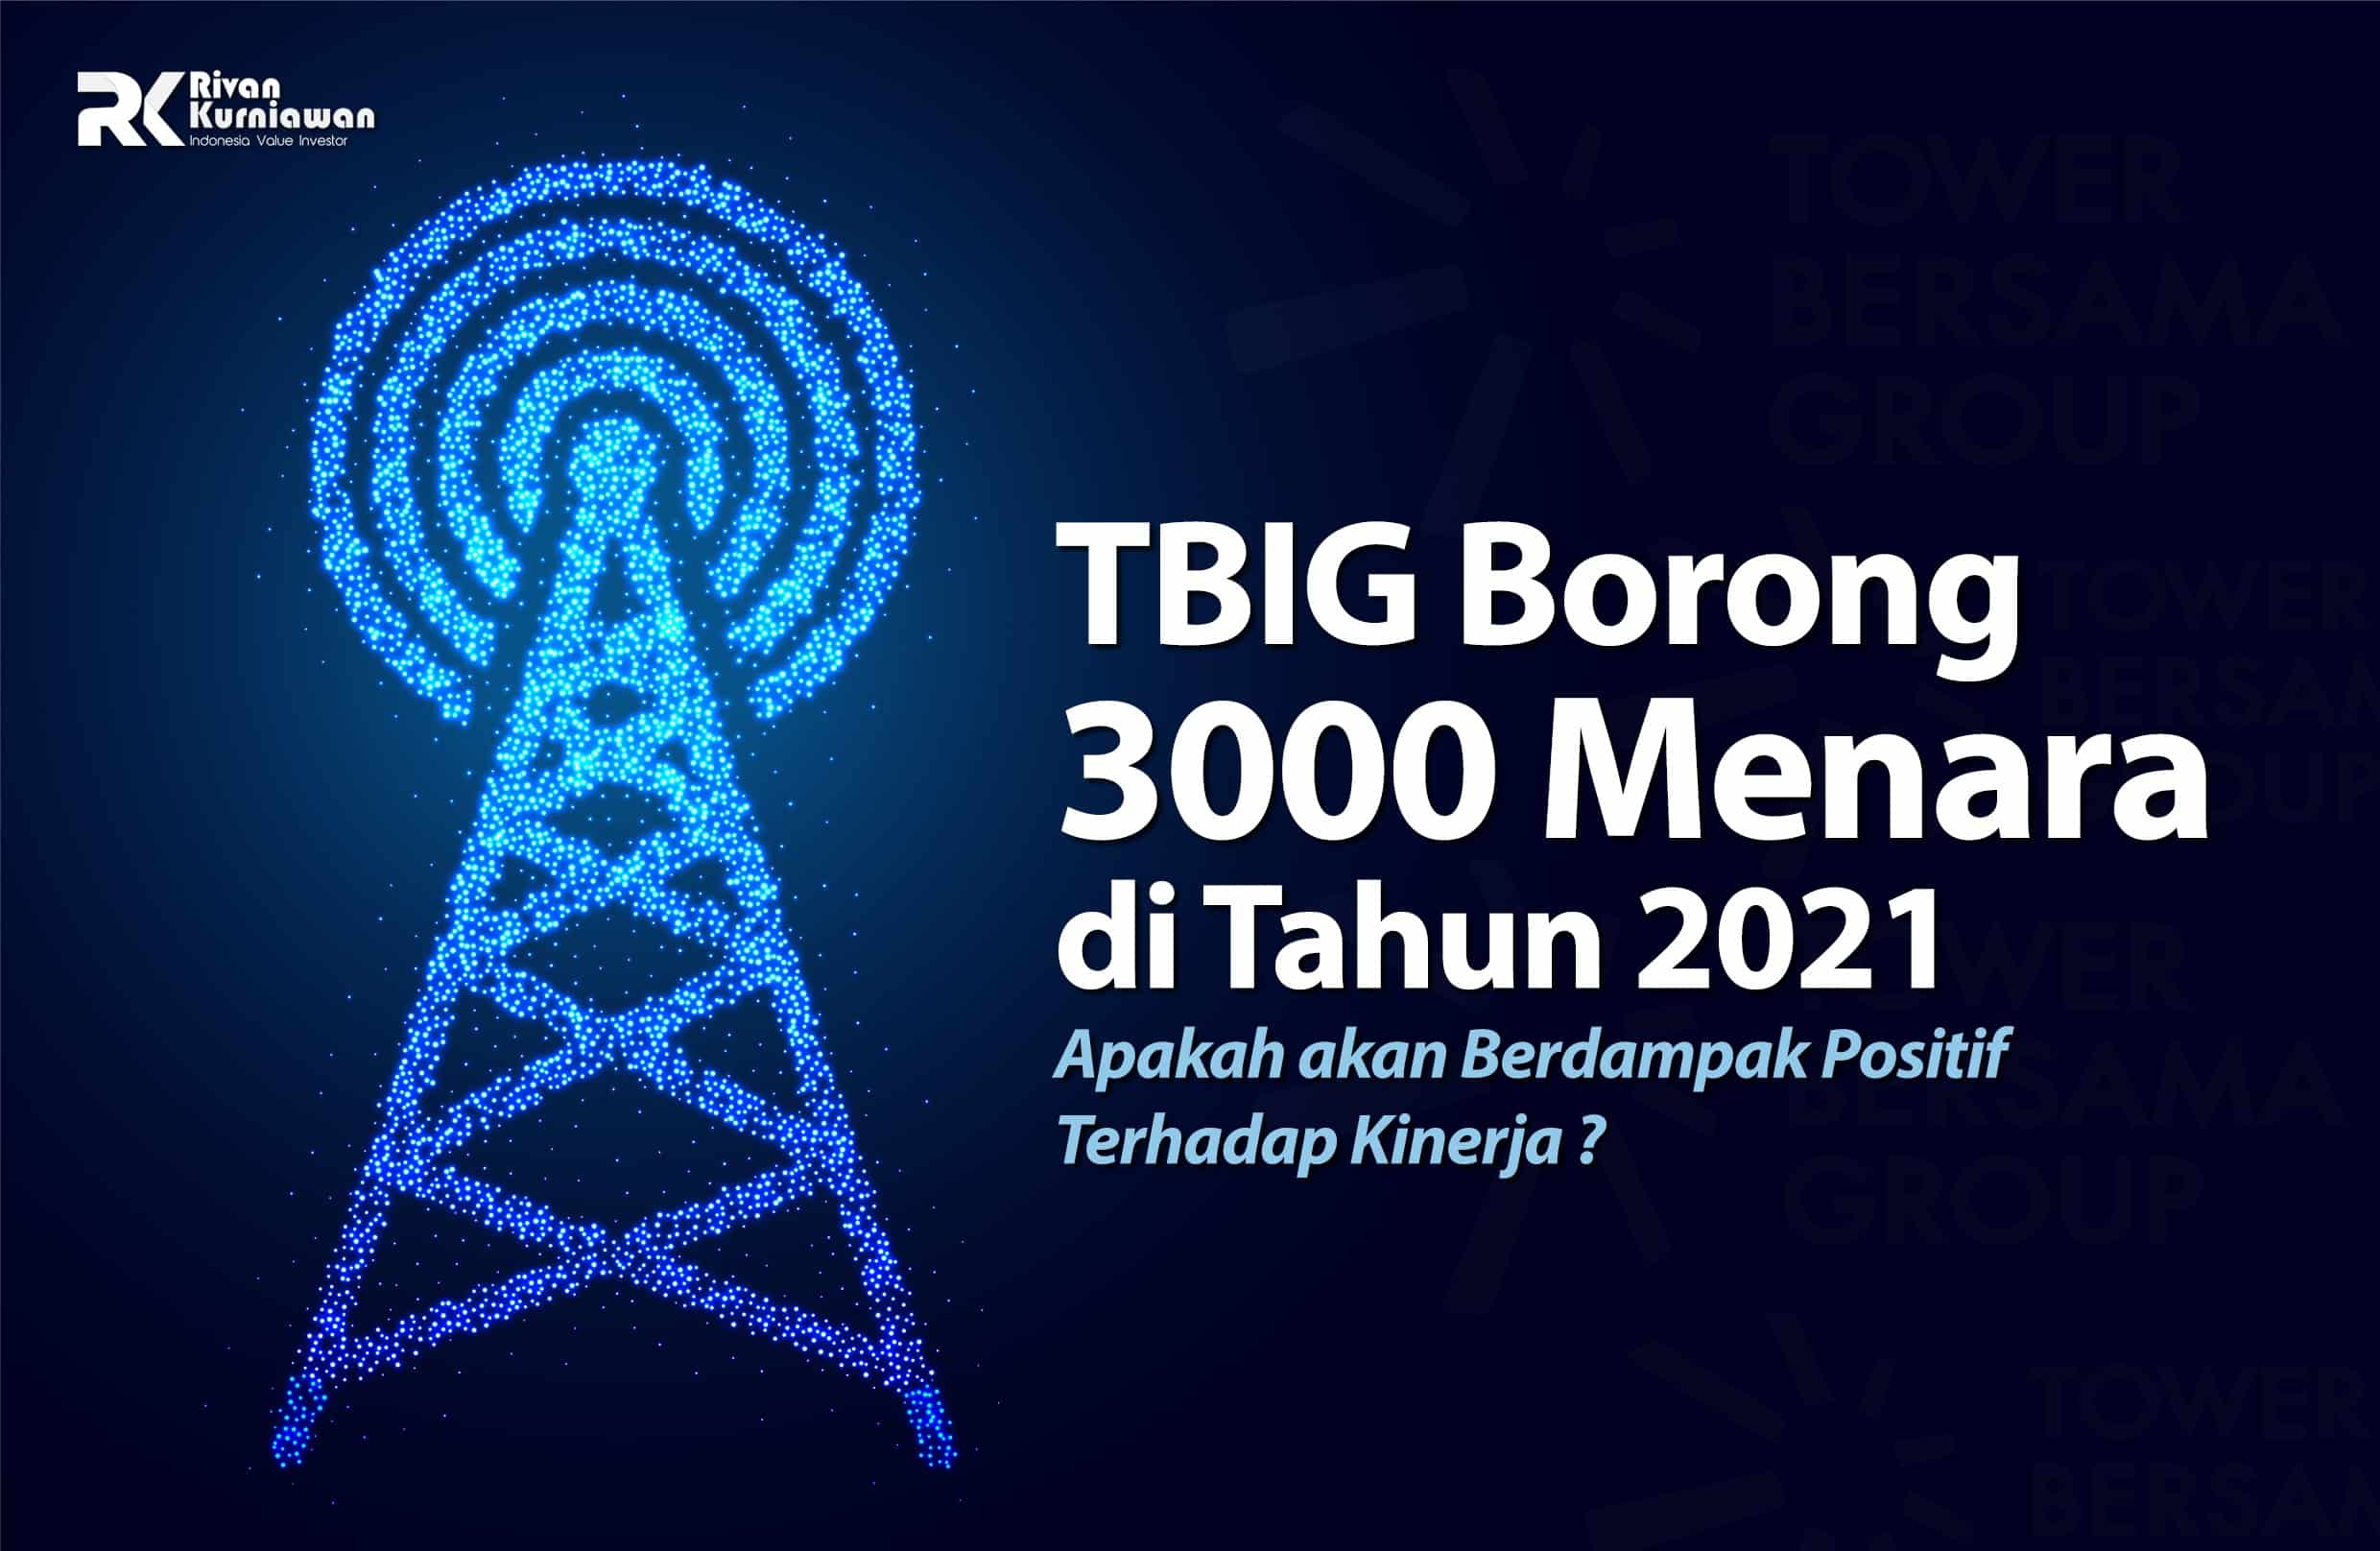 TBIG Borong 3000 Menara